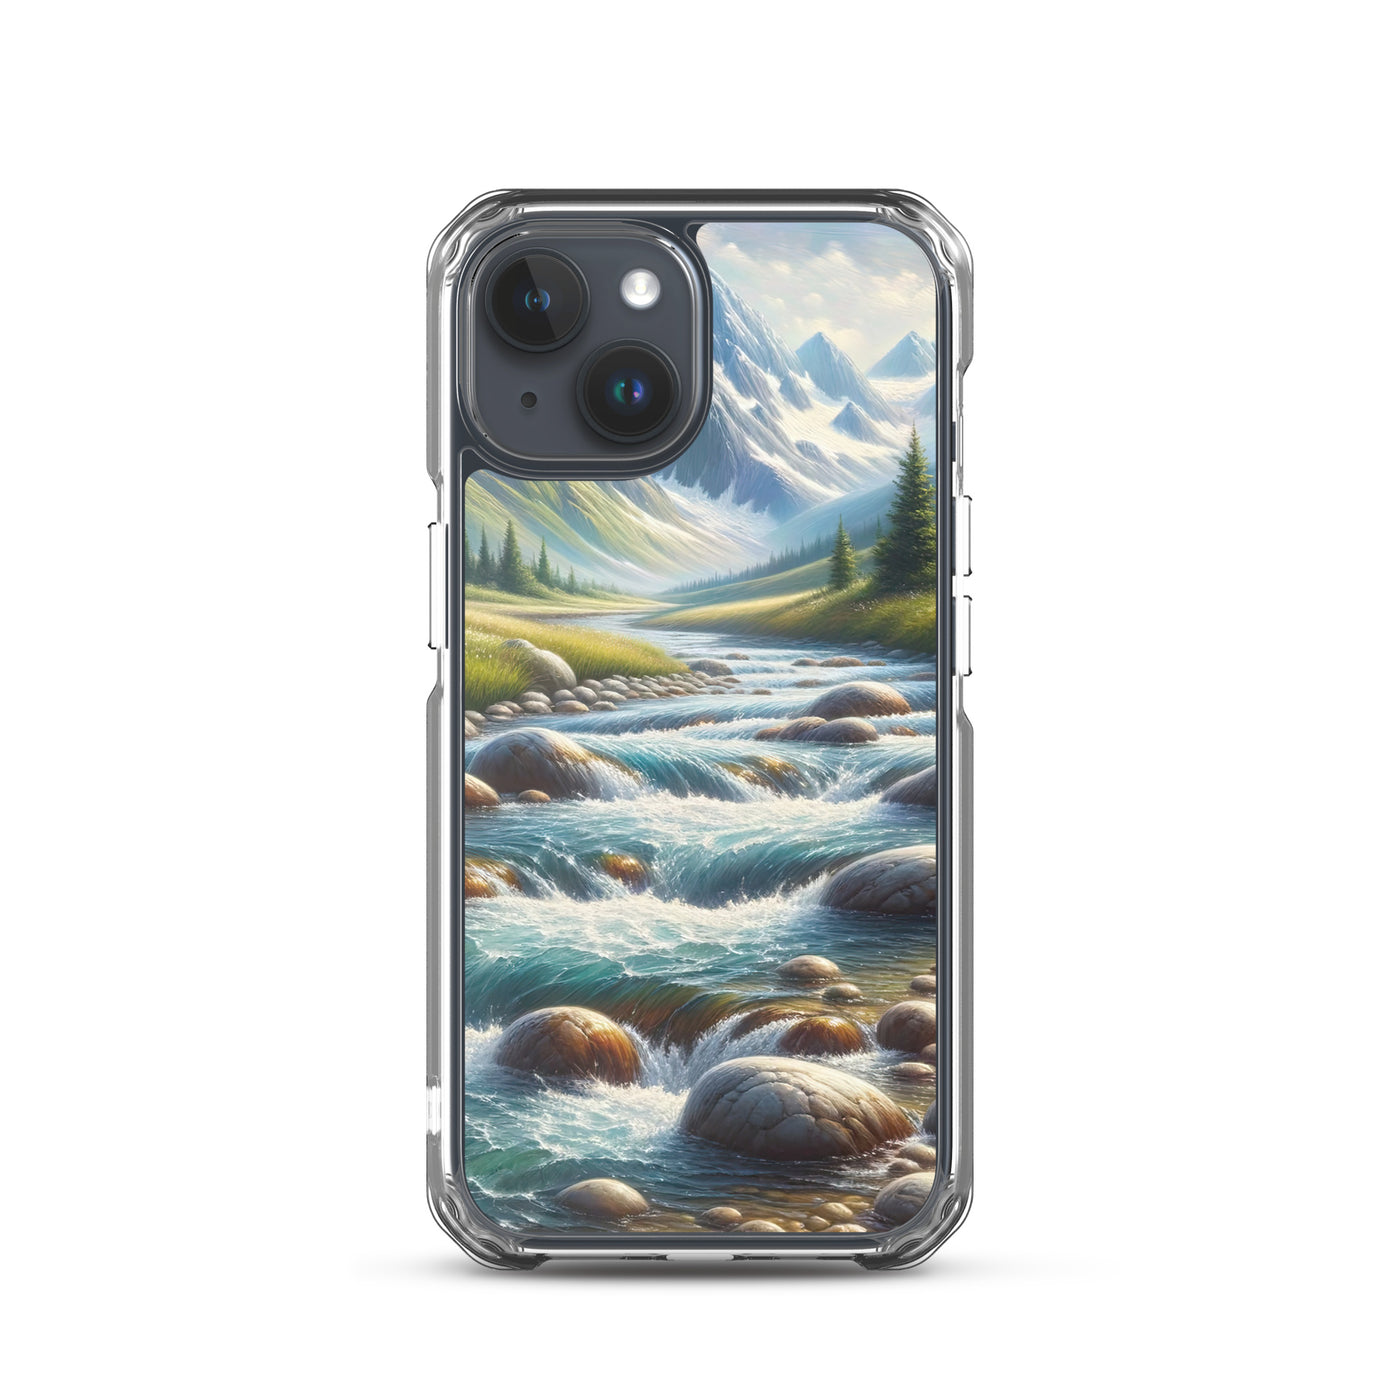 Ölgemälde eines Gebirgsbachs durch felsige Landschaft - iPhone Schutzhülle (durchsichtig) berge xxx yyy zzz iPhone 15